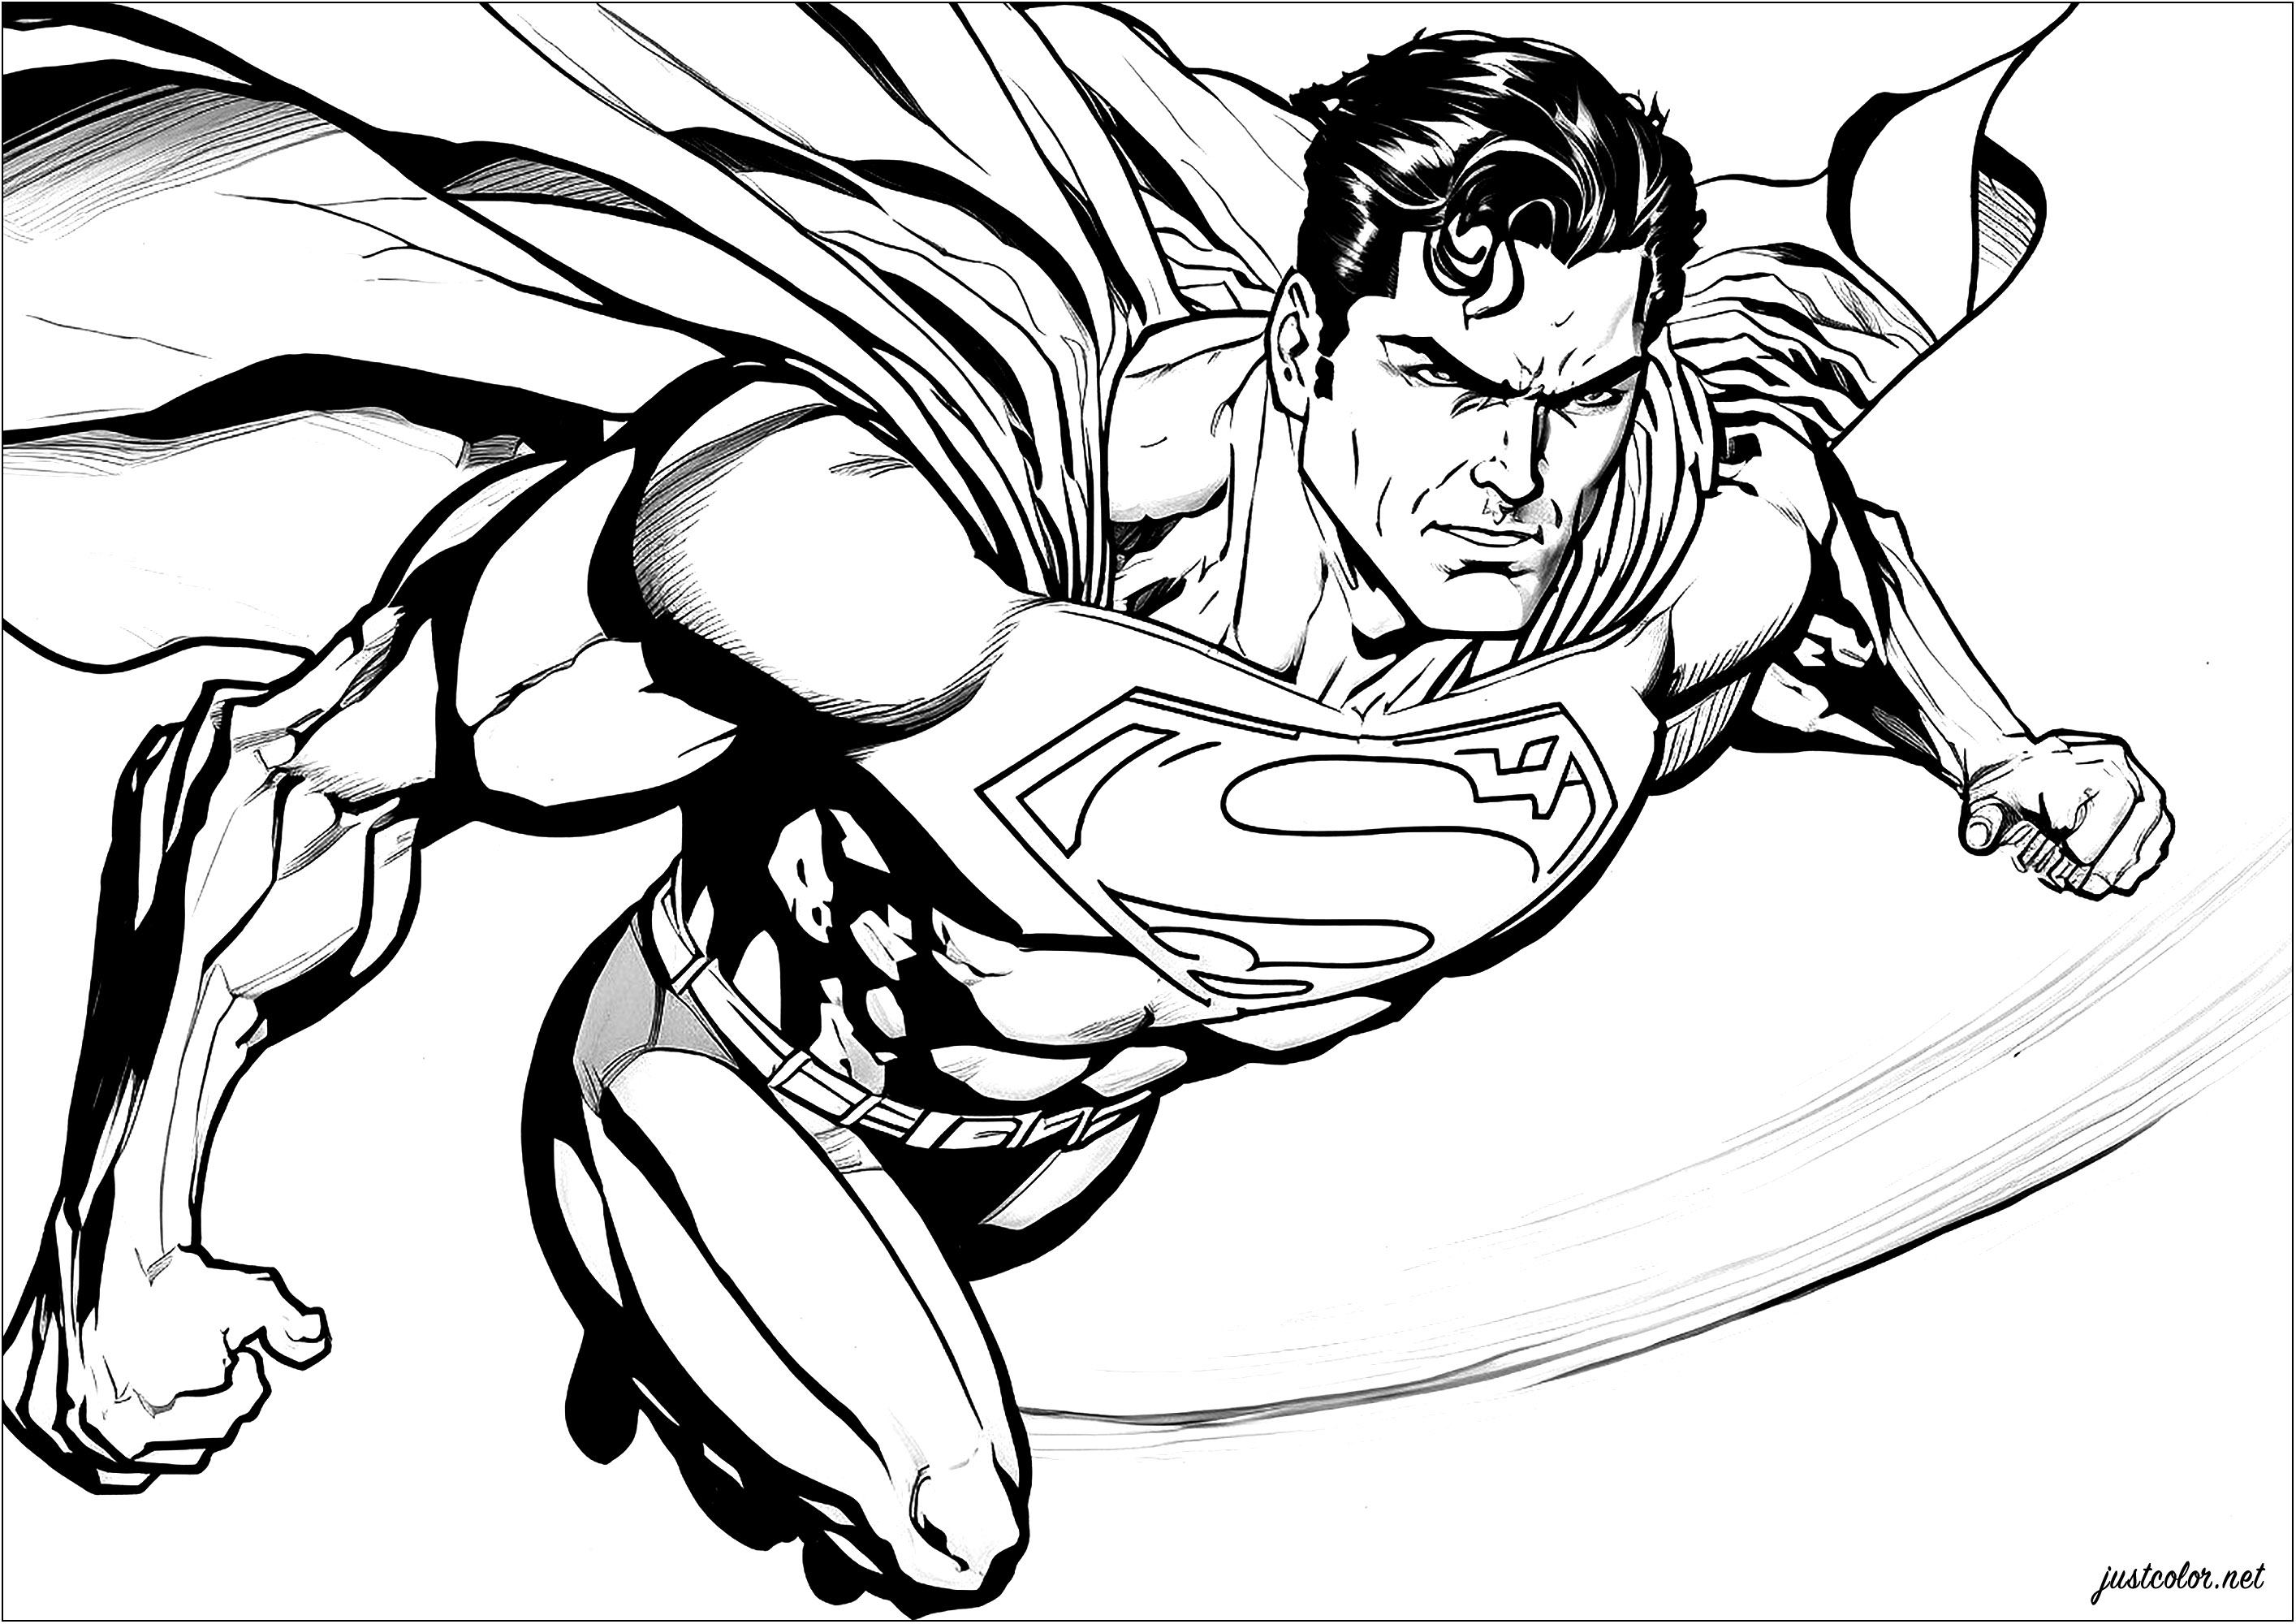 Superman en pleno vuelo, capa al viento. Esta página para colorear representa a Superman volando. Vemos al superhéroe, vestido con su traje (que pronto será rojo y azul gracias a ti), volando por el cielo, con una expresión de determinación en la cara.